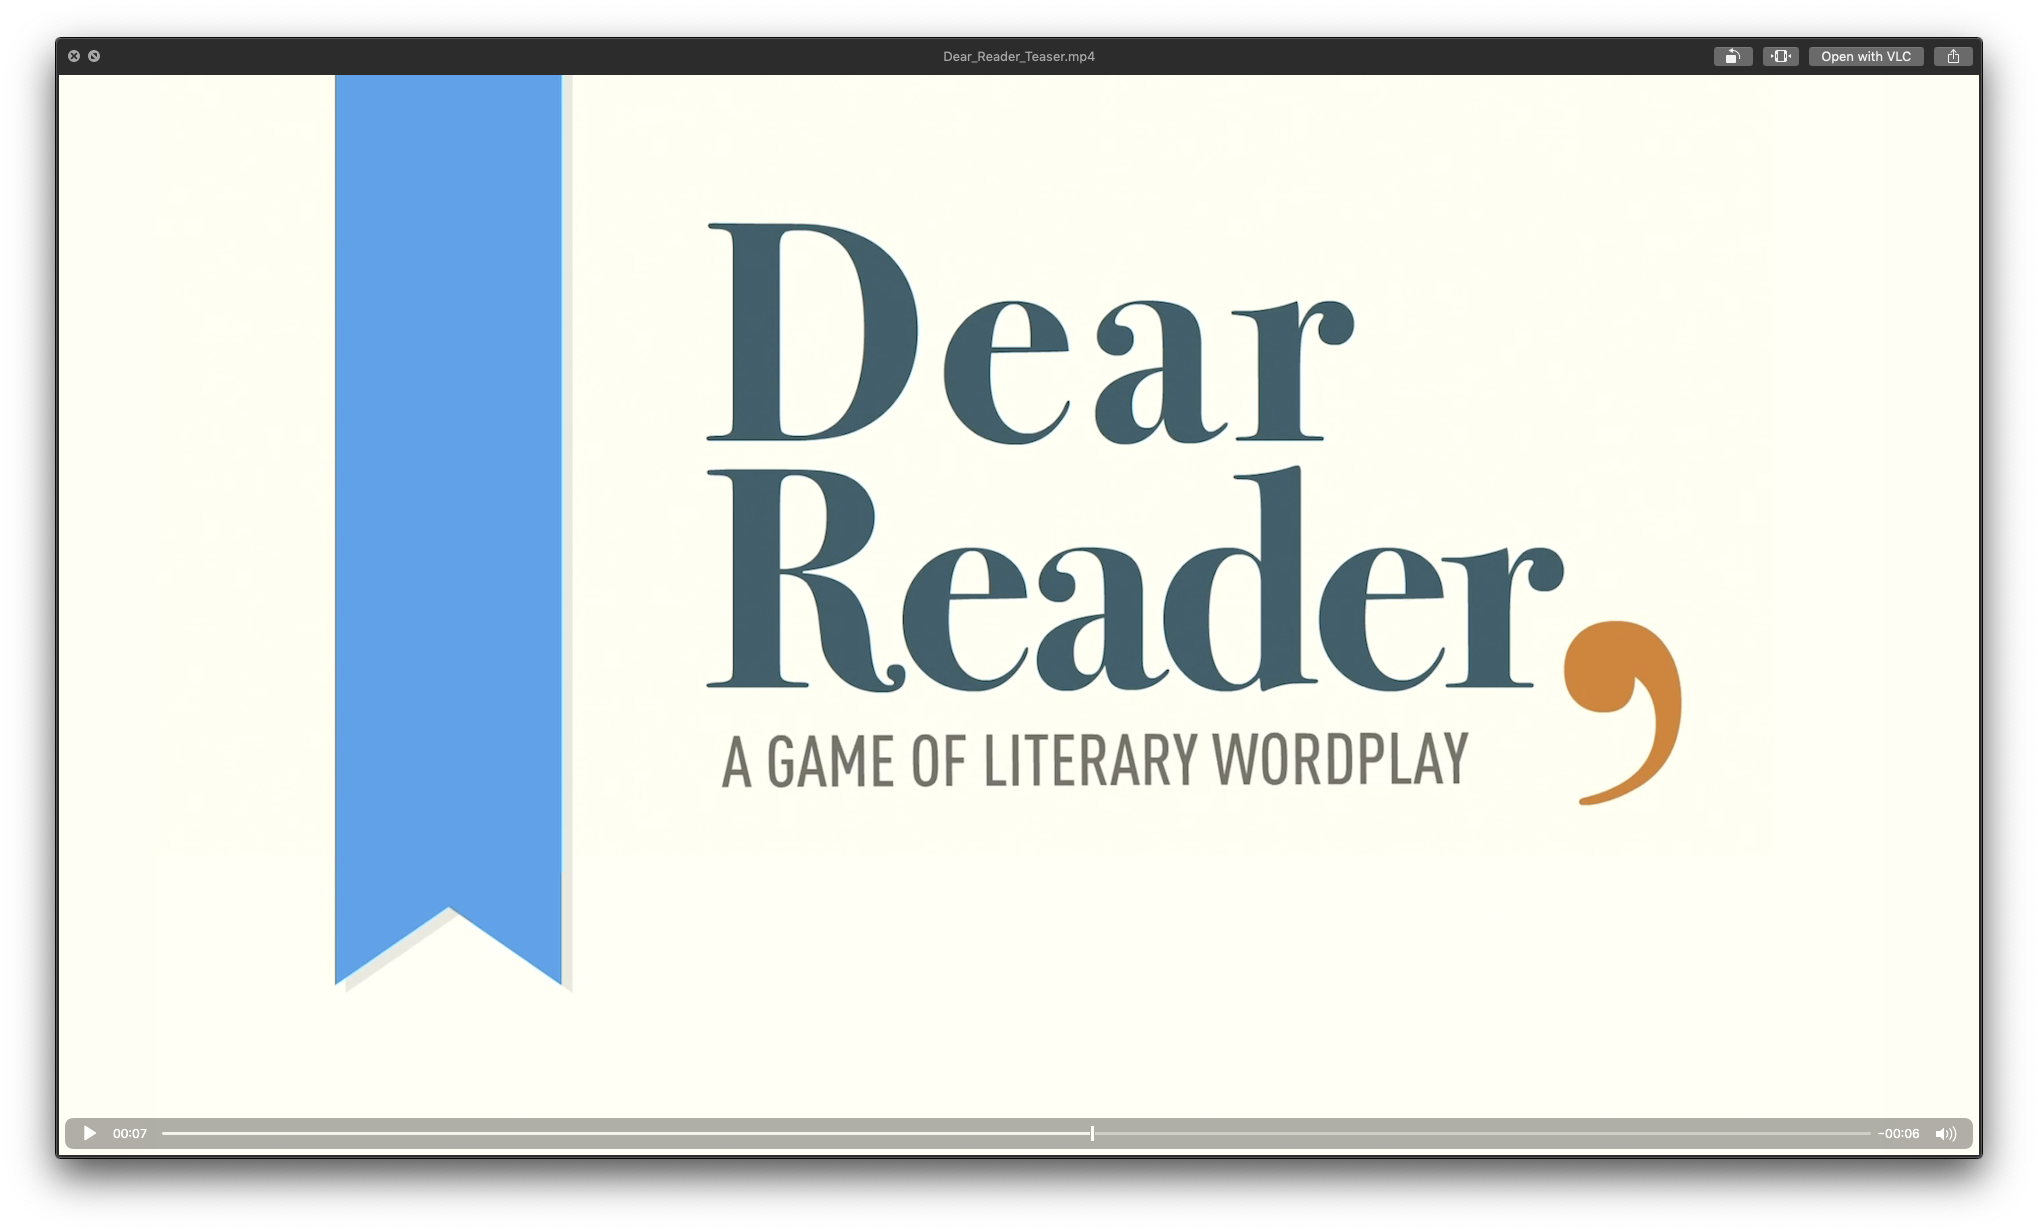 Dear_Reader_Teaser_thumbnail.png